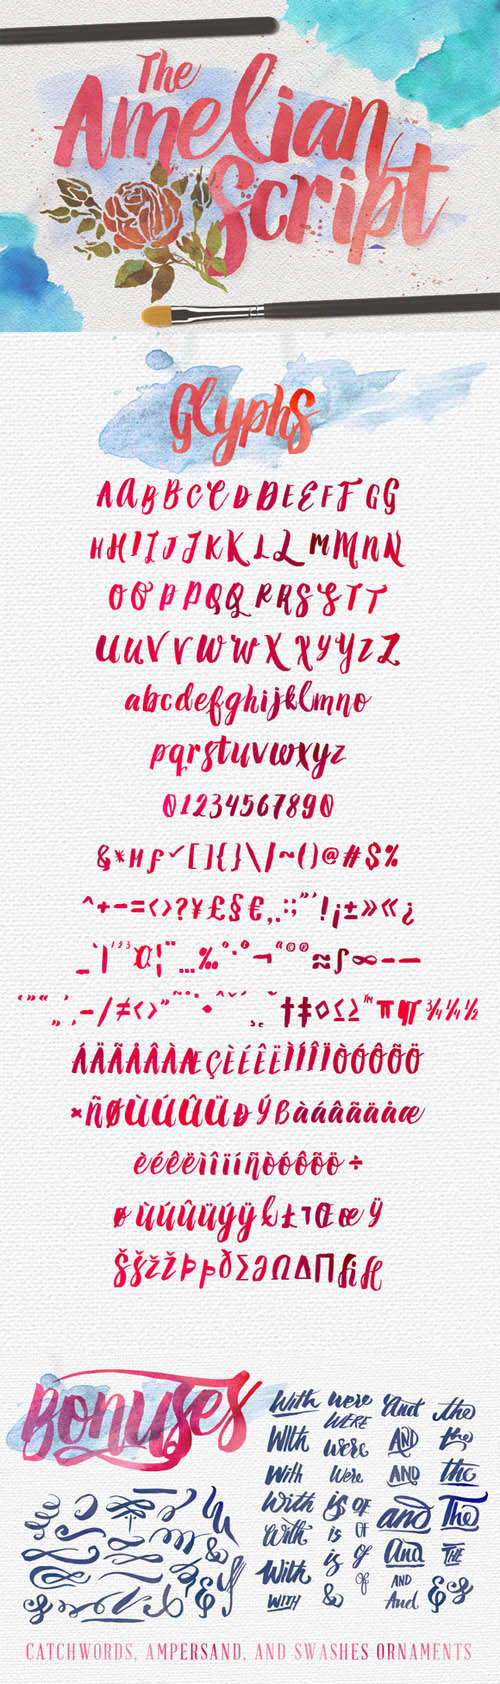 Amelian Script Typeface